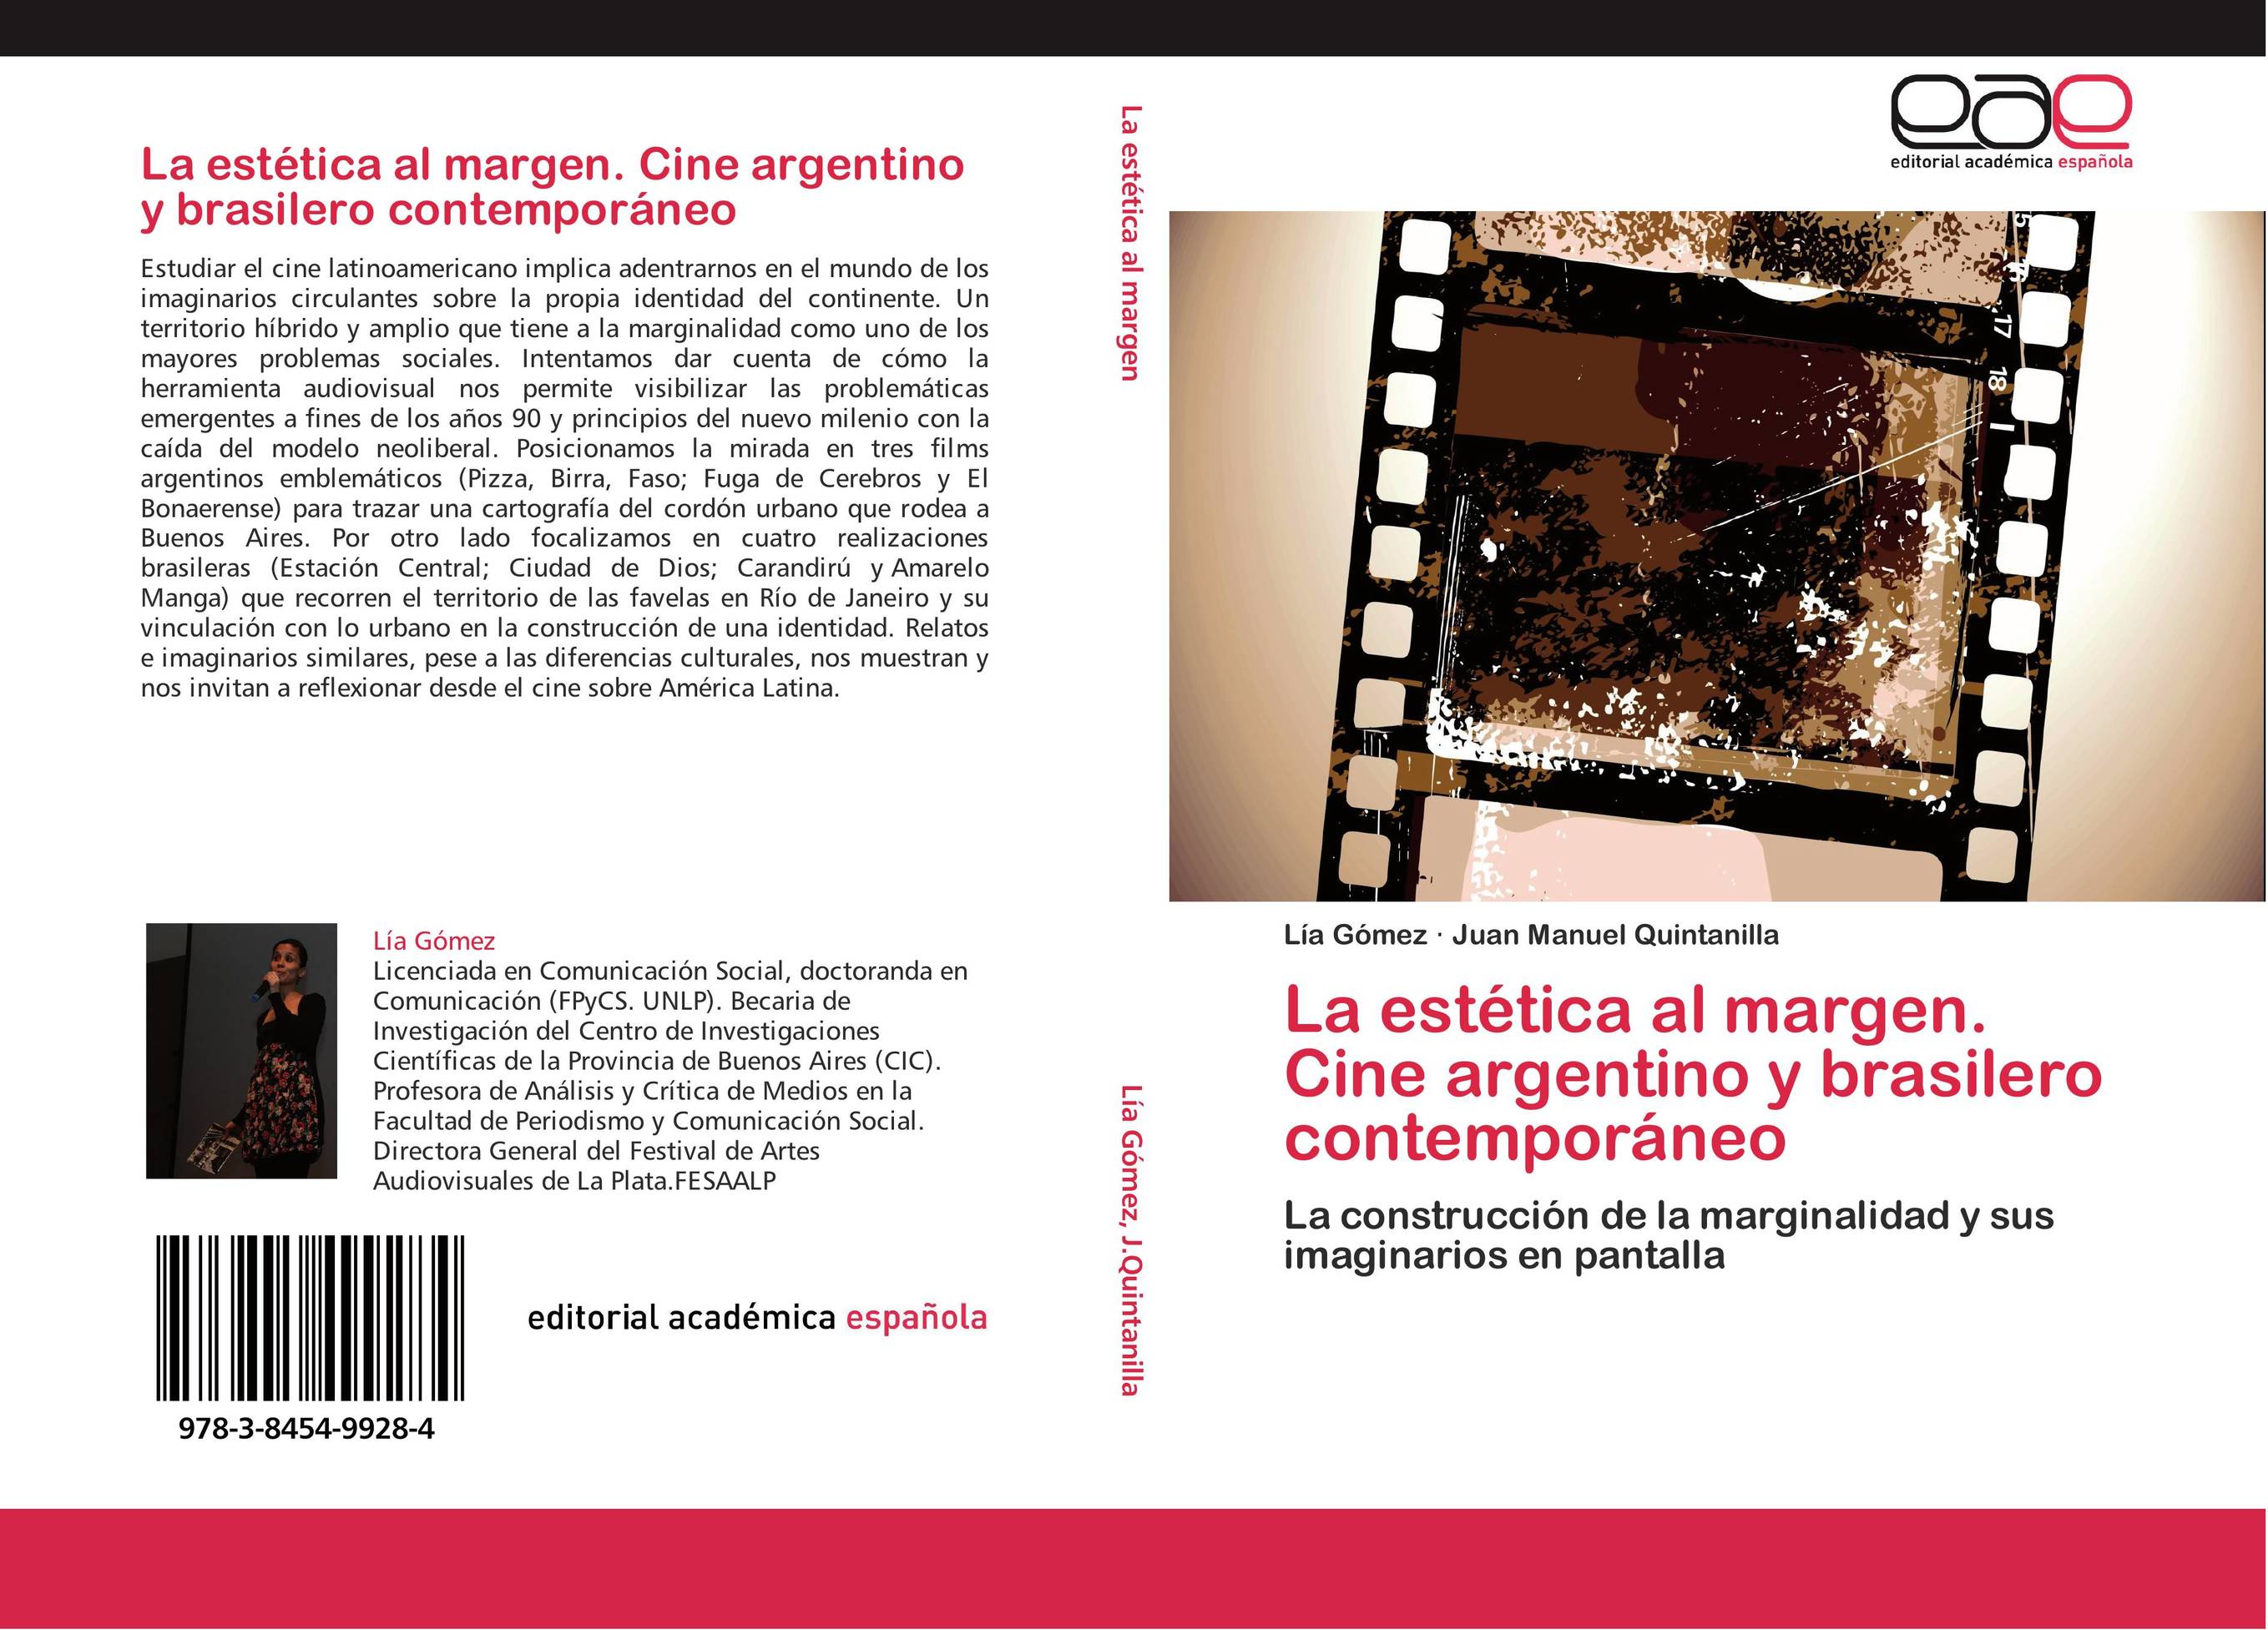 La estética al margen. Cine argentino y brasilero contemporáneo